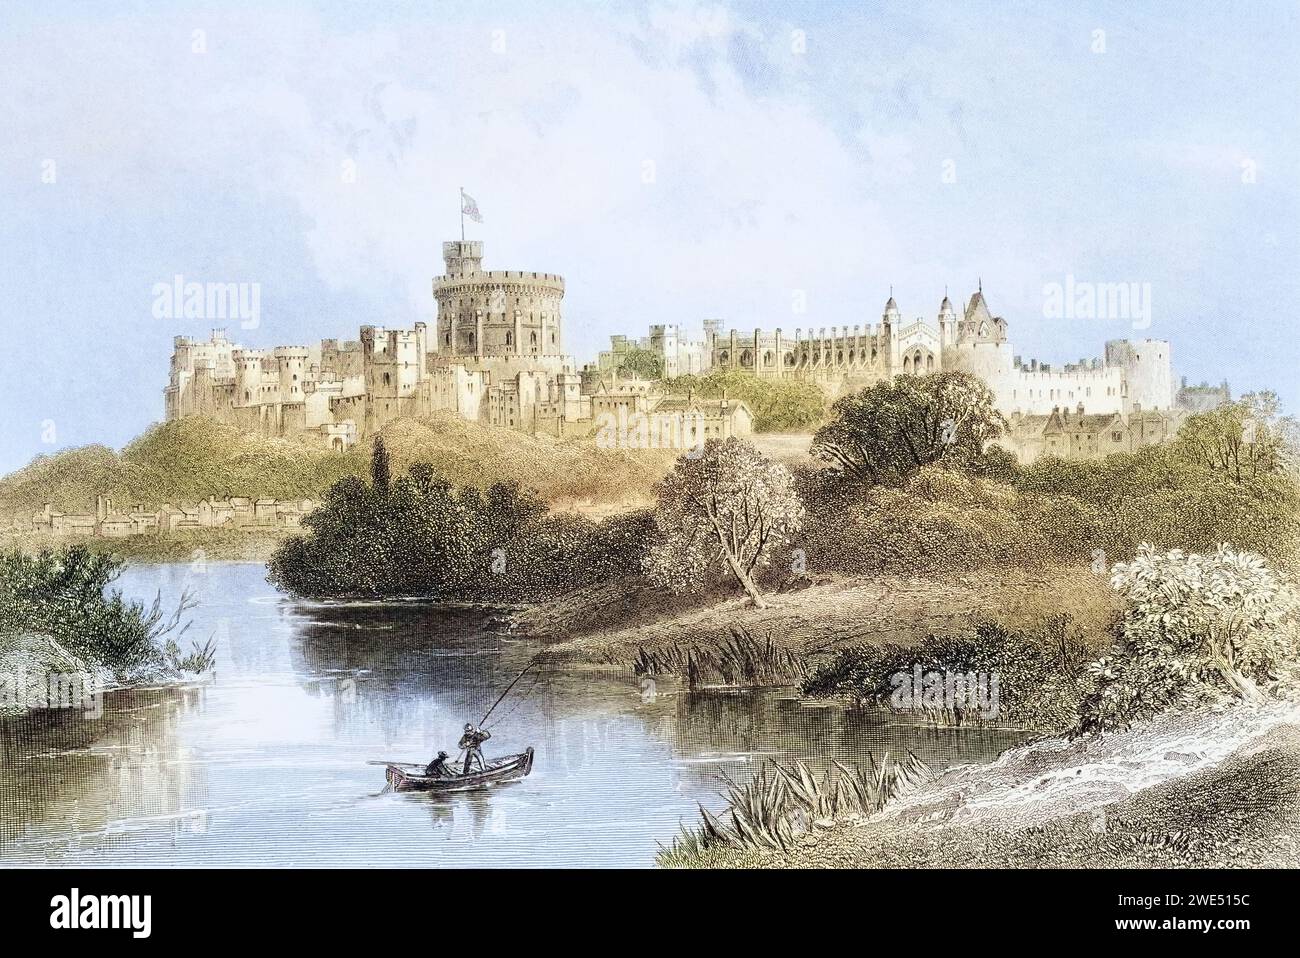 Wndsor Castle Windsor England aus der Gallery of Geography veröffentlichte London um 1872, Historisch, digital restaurierte Reproduktion von einer Vorlage aus dem 19. Jahrhundert, Datum nicht angegeben Stockfoto